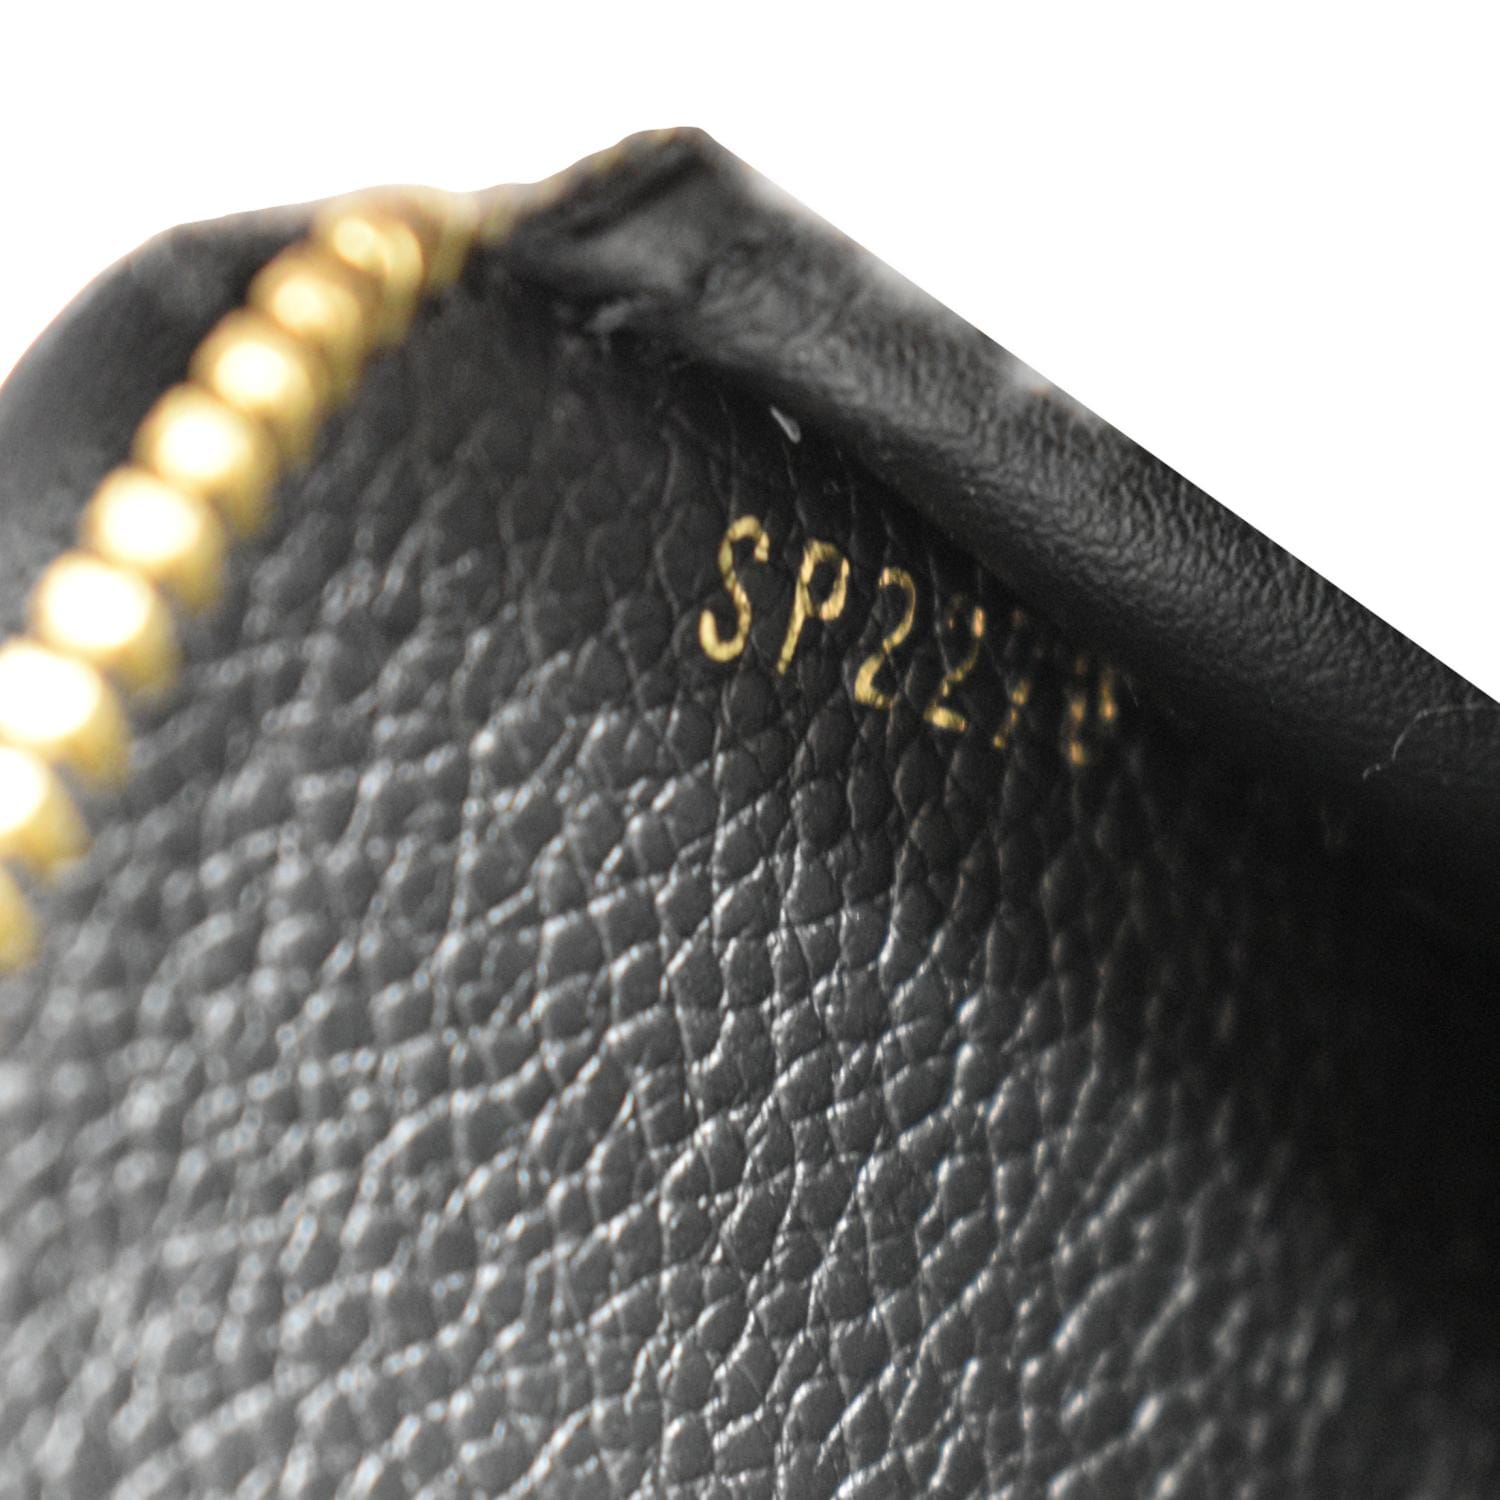 Zippy Wallet Bicolor Empreinte – Keeks Designer Handbags